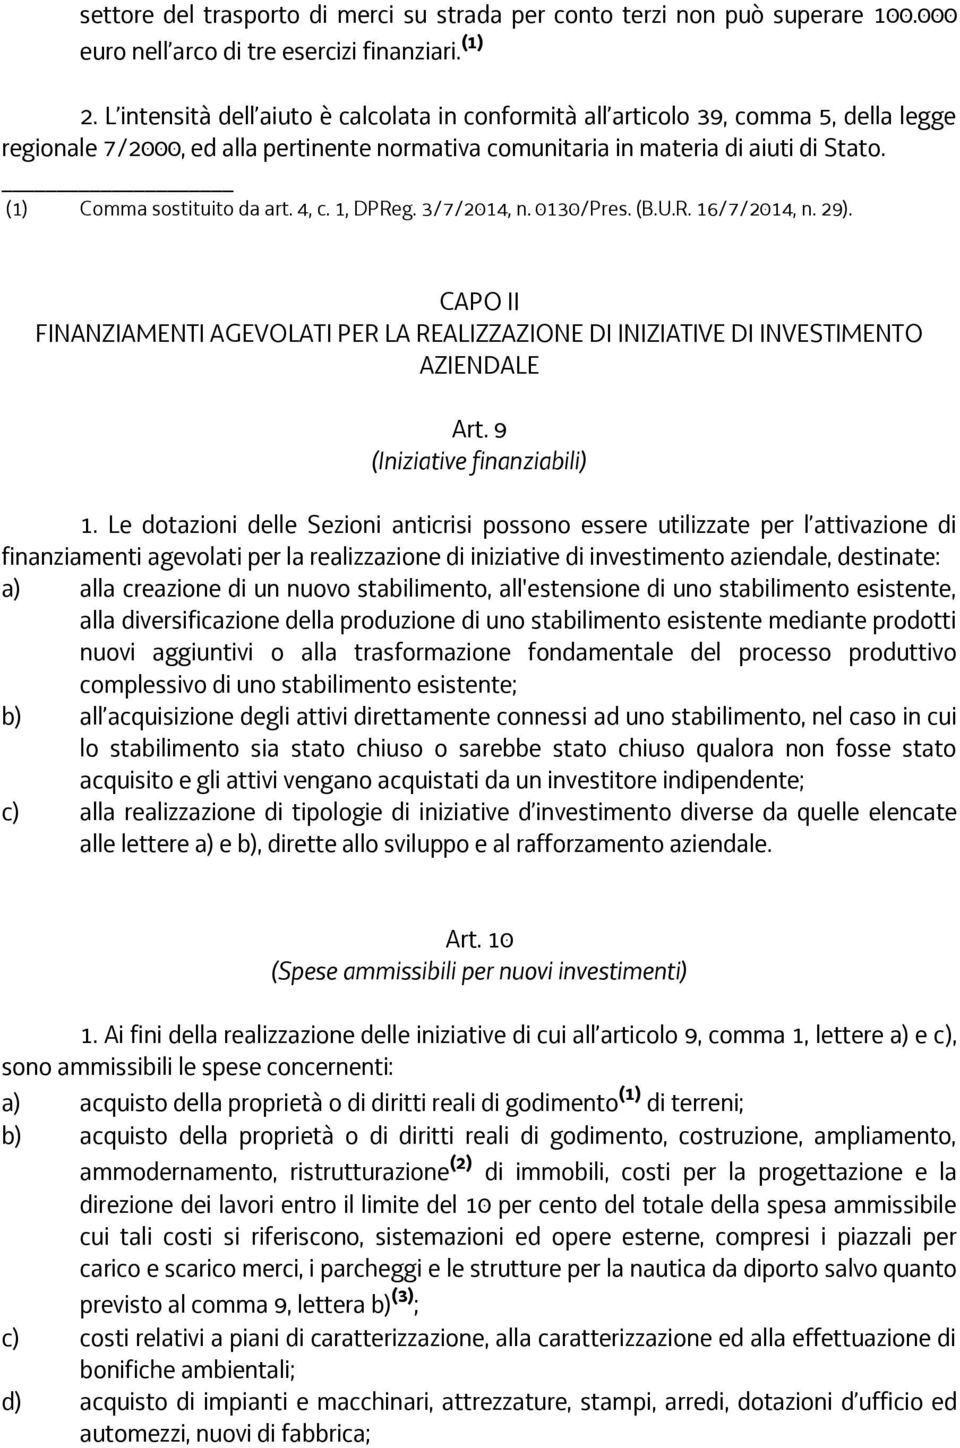 (1) Comma sostituito da art. 4, c. 1, DPReg. 3/7/2014, n. 0130/Pres. (B.U.R. 16/7/2014, n. 29). CAPO II FINANZIAMENTI AGEVOLATI PER LA REALIZZAZIONE DI INIZIATIVE DI INVESTIMENTO AZIENDALE Art.